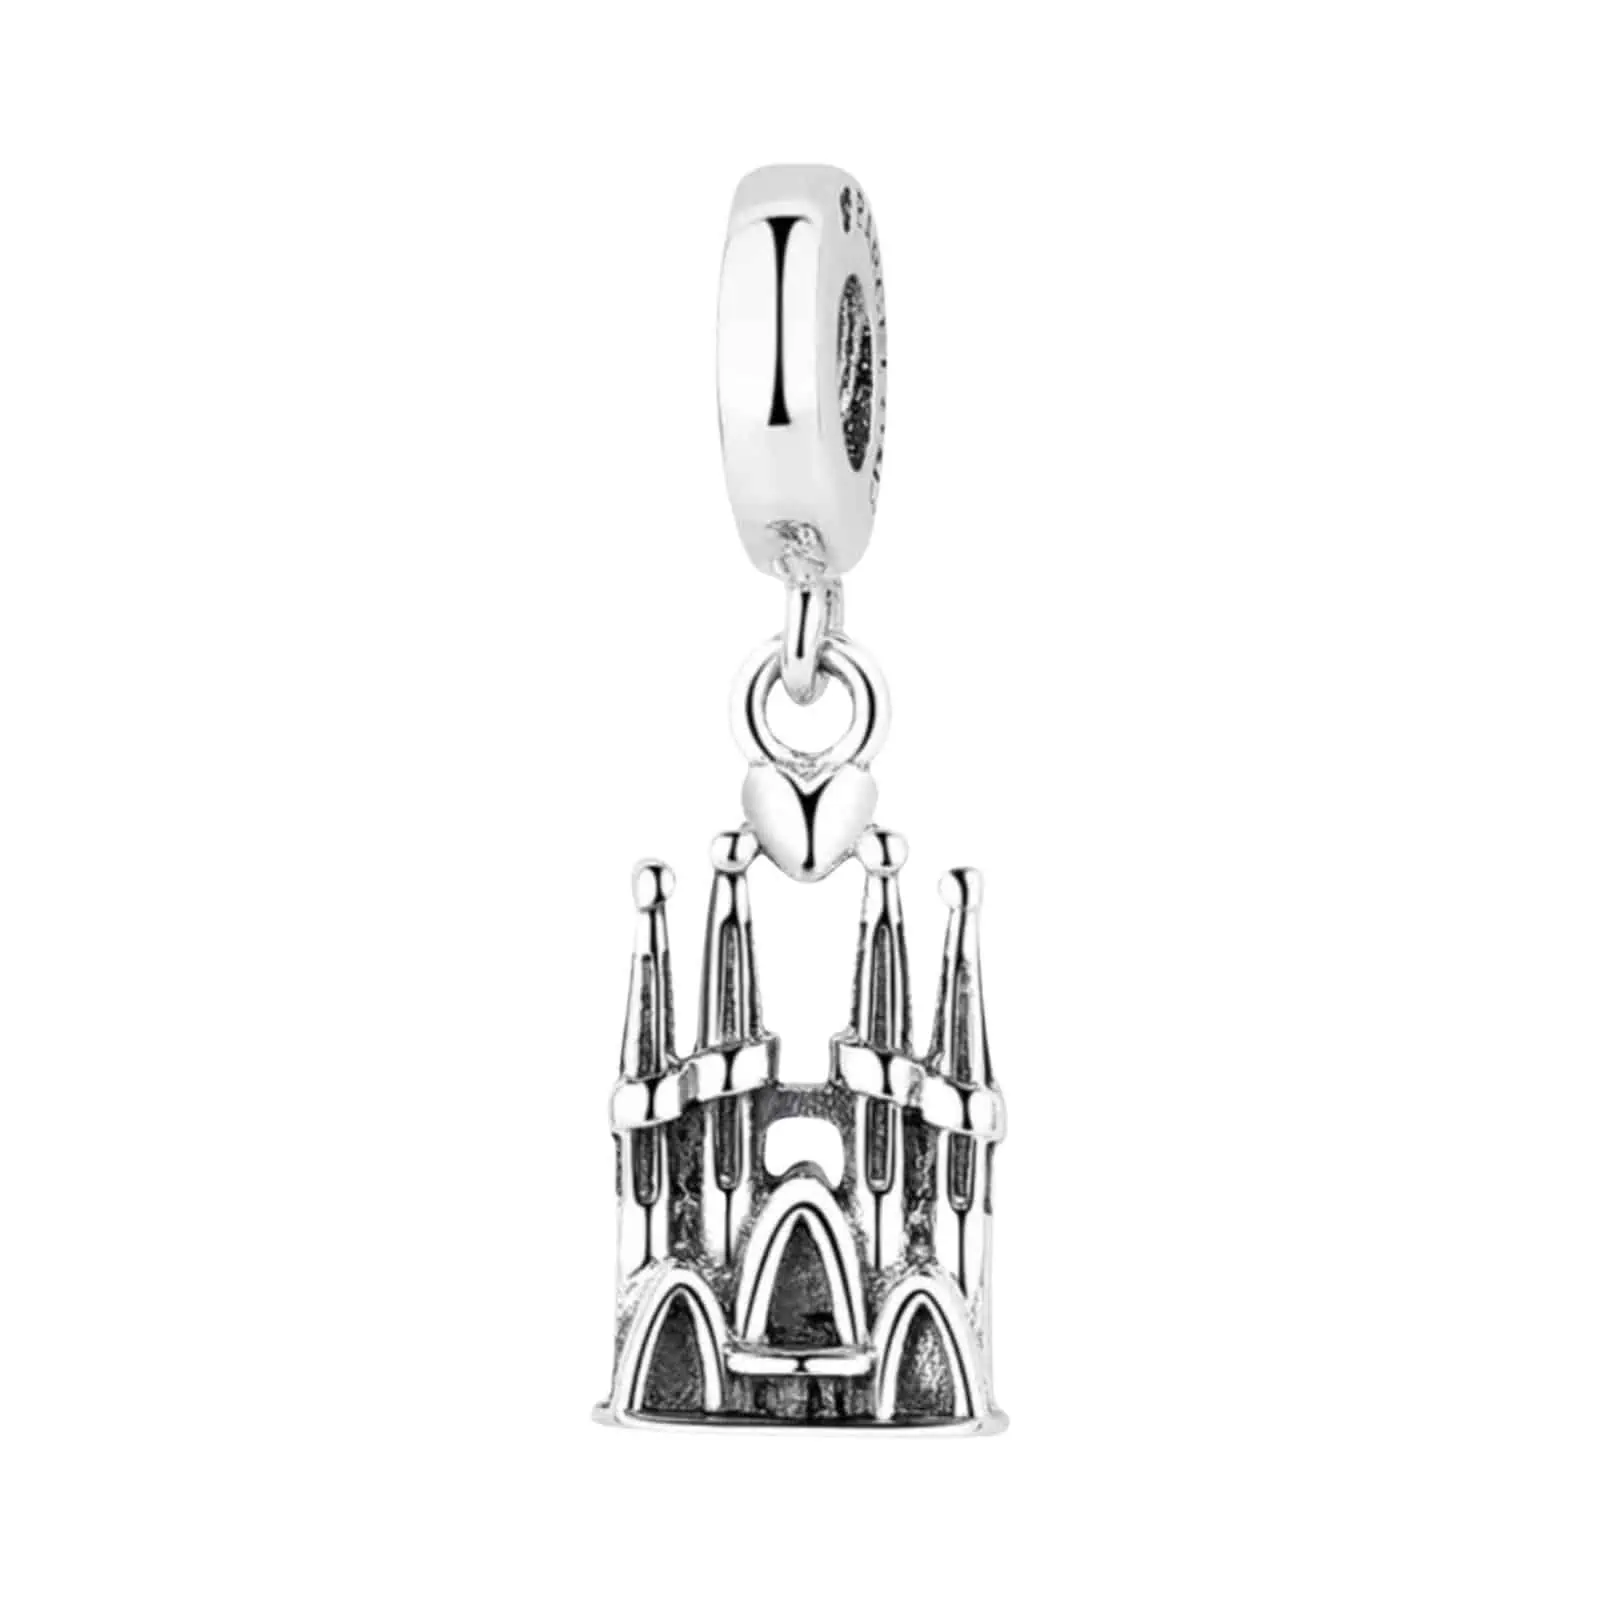 Product Afbeelding Voor en Achteraanzicht van onze prachtige sagrada familia charm. Deze bedel uit Barcelona is gemaakt van 925 sterling zilver.